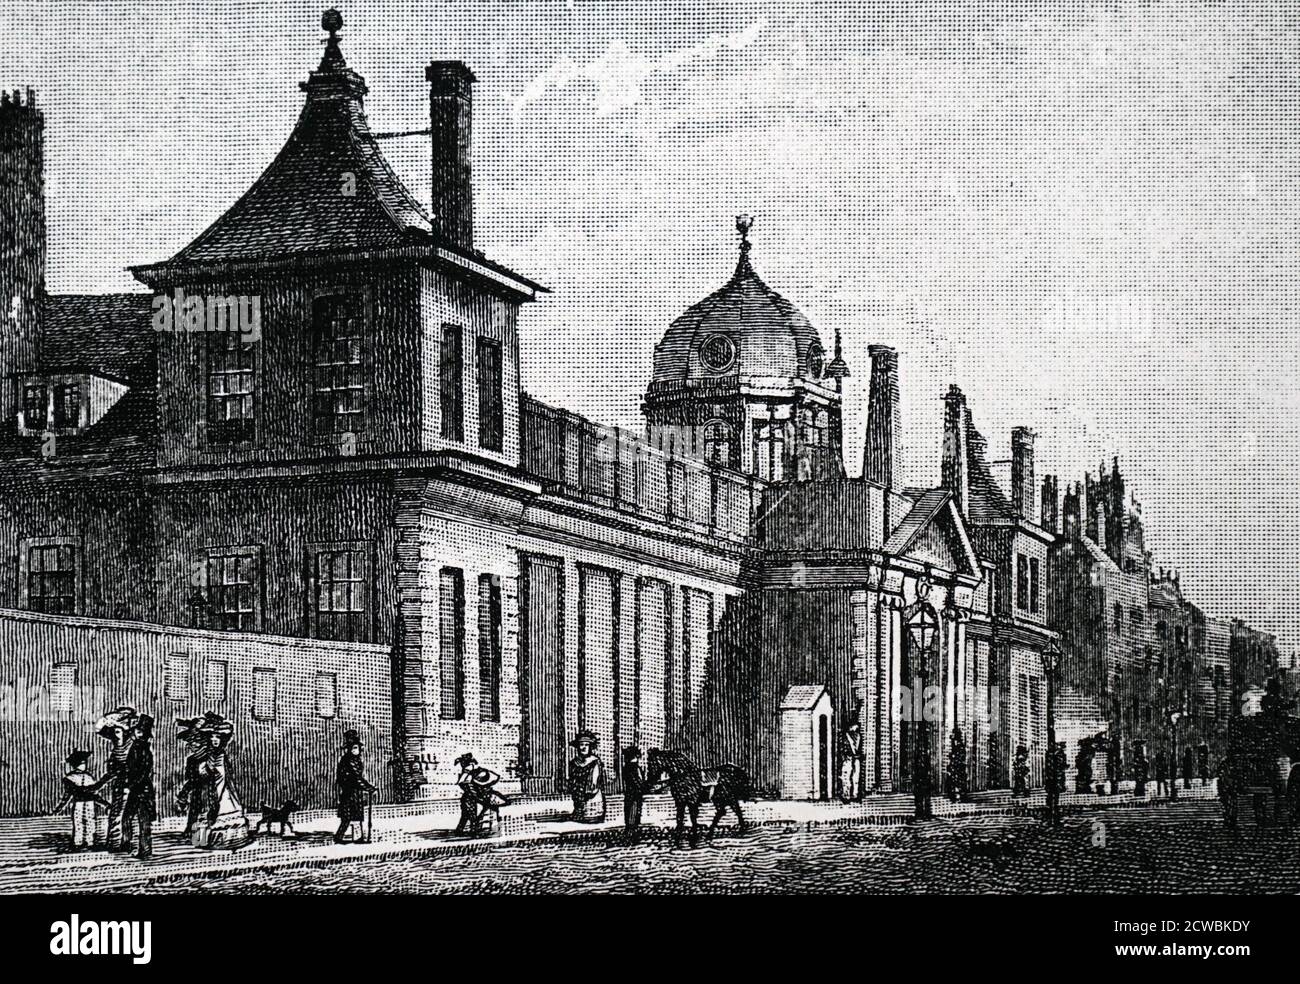 Gravur, die das Äußere des Montague House, der alten Heimat des British Museum, von der Great Russell Street darstellt. Stockfoto